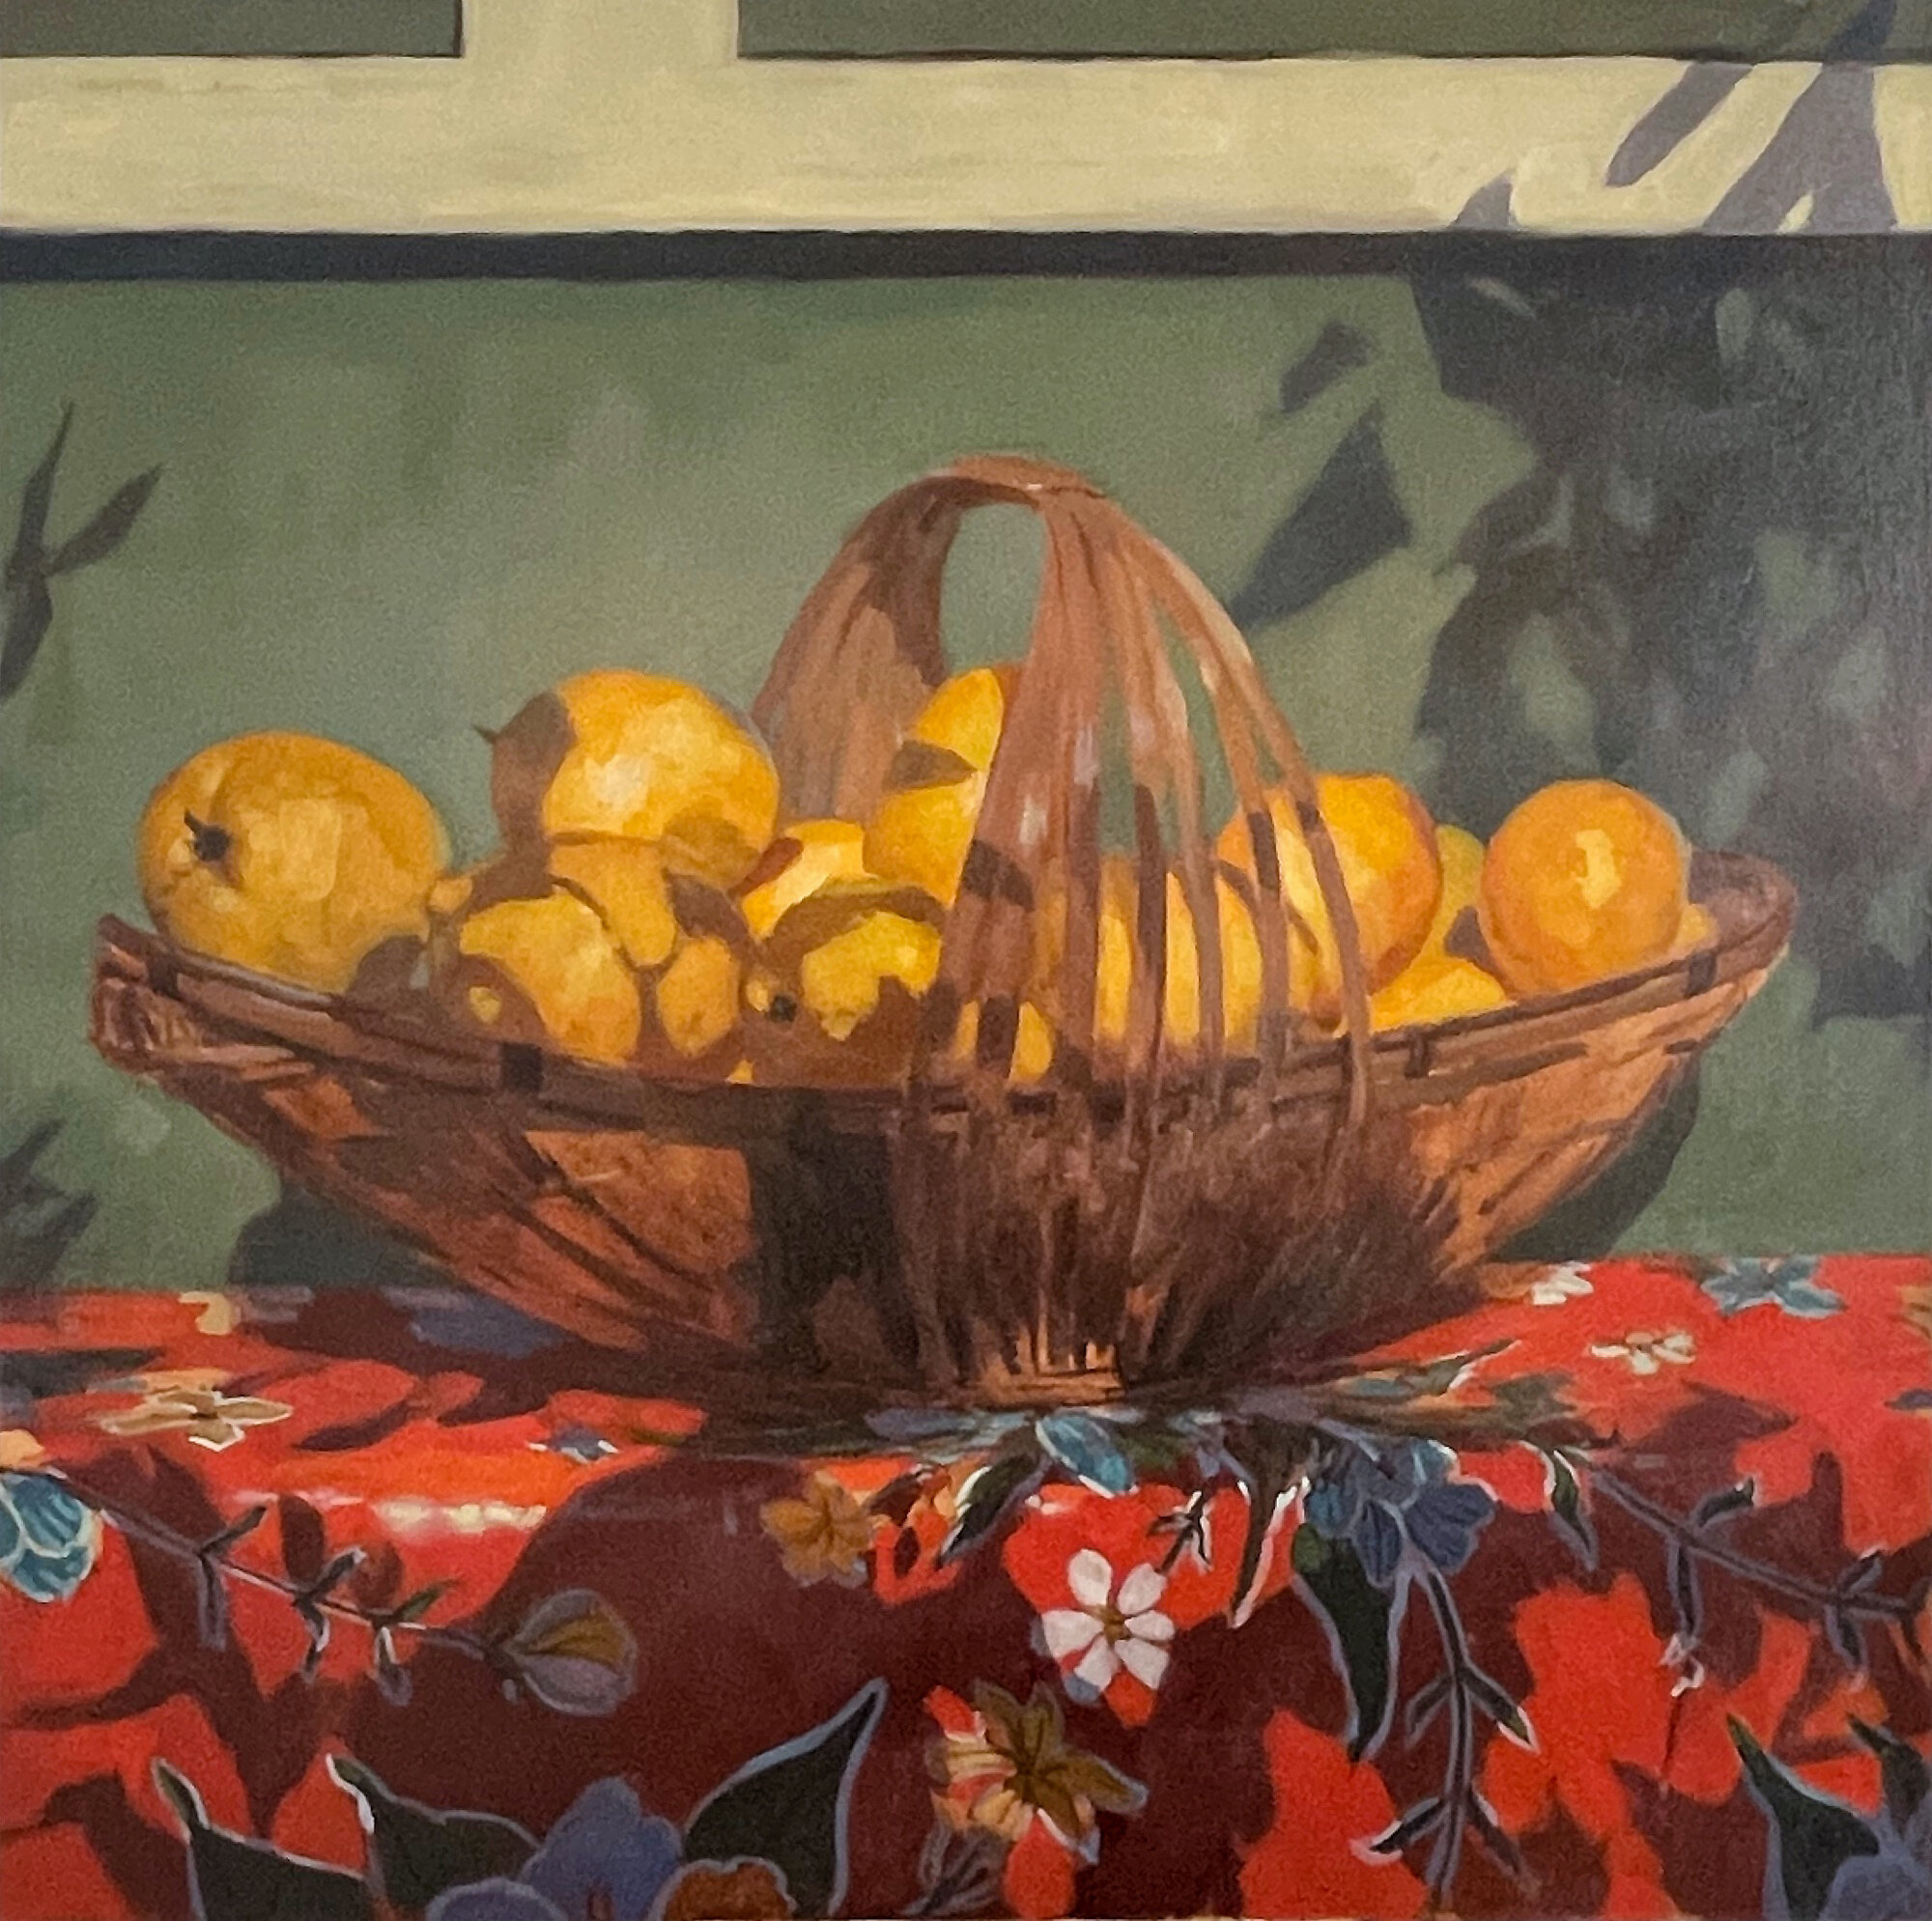 Basket of Lemons by Brandon Smith